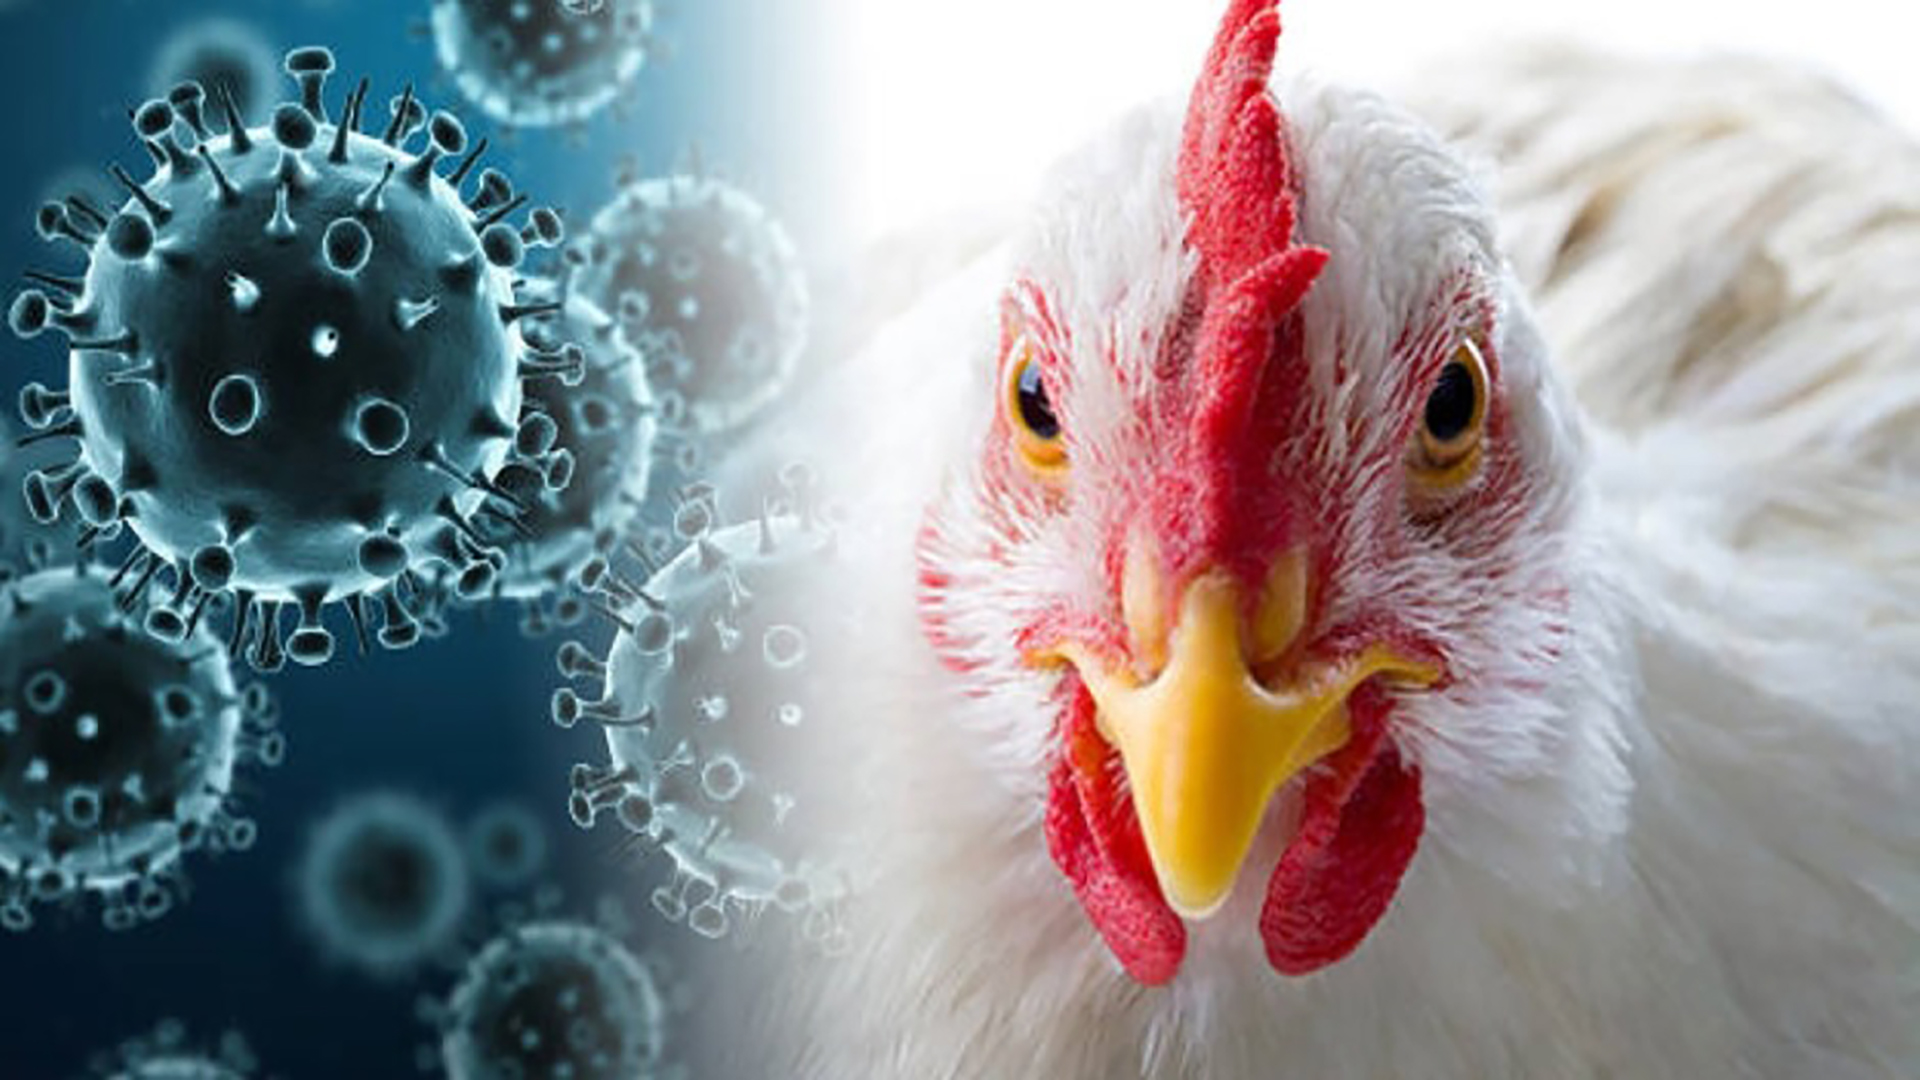 Министерство сельского хозяйства информирует о возрастании рисков ухудшения эпизоотической ситуации по высокопатогенному гриппу птиц на территории Российской Федерации.